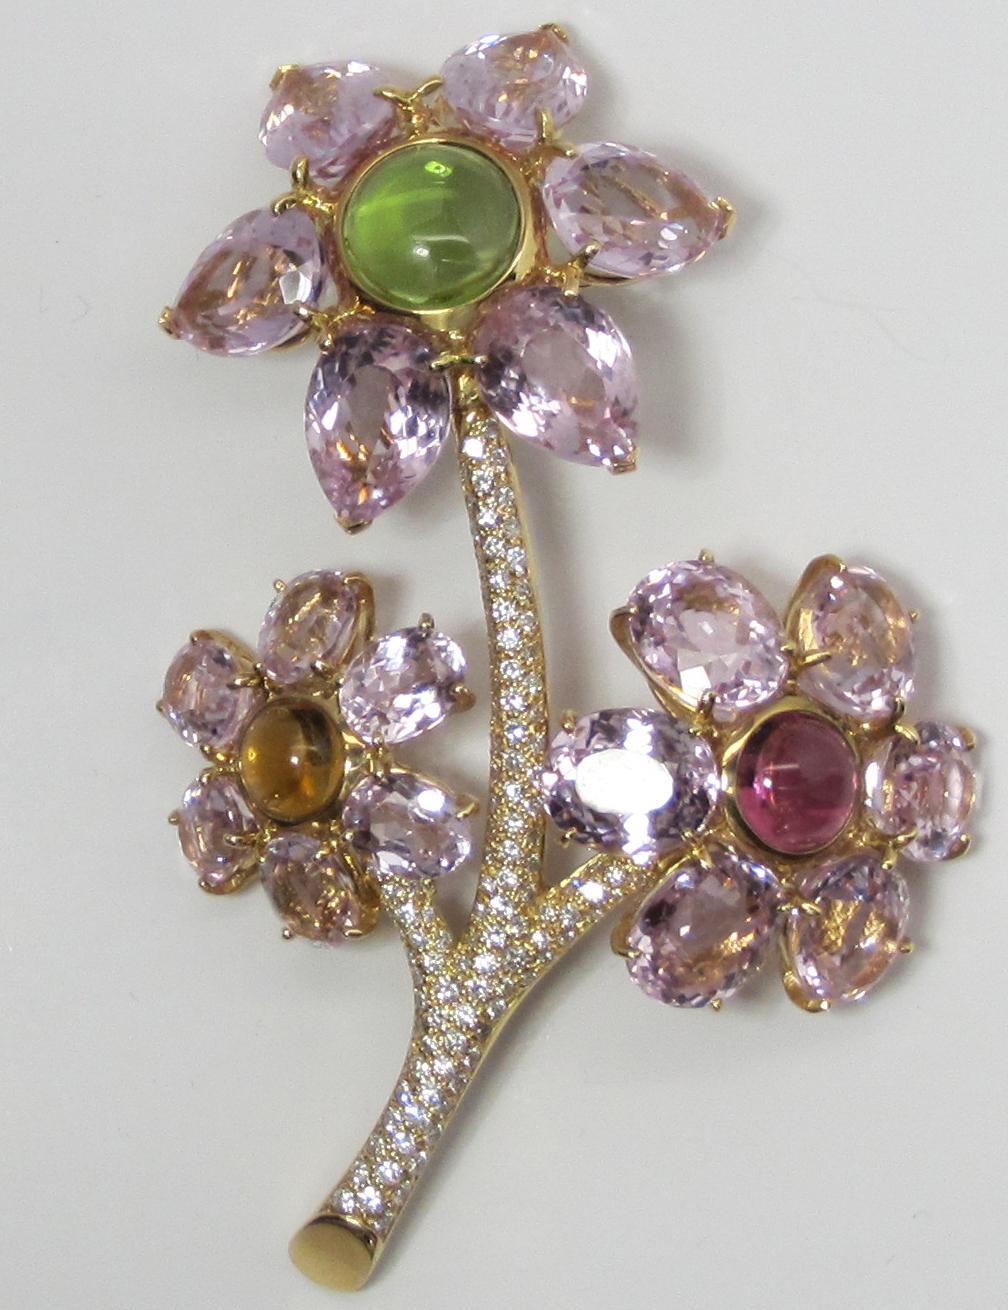 NEW GAL CERT Kunzite Tourmaline Diamond Flower Brooch 18K Gold LFPARIS Mark For Sale 3